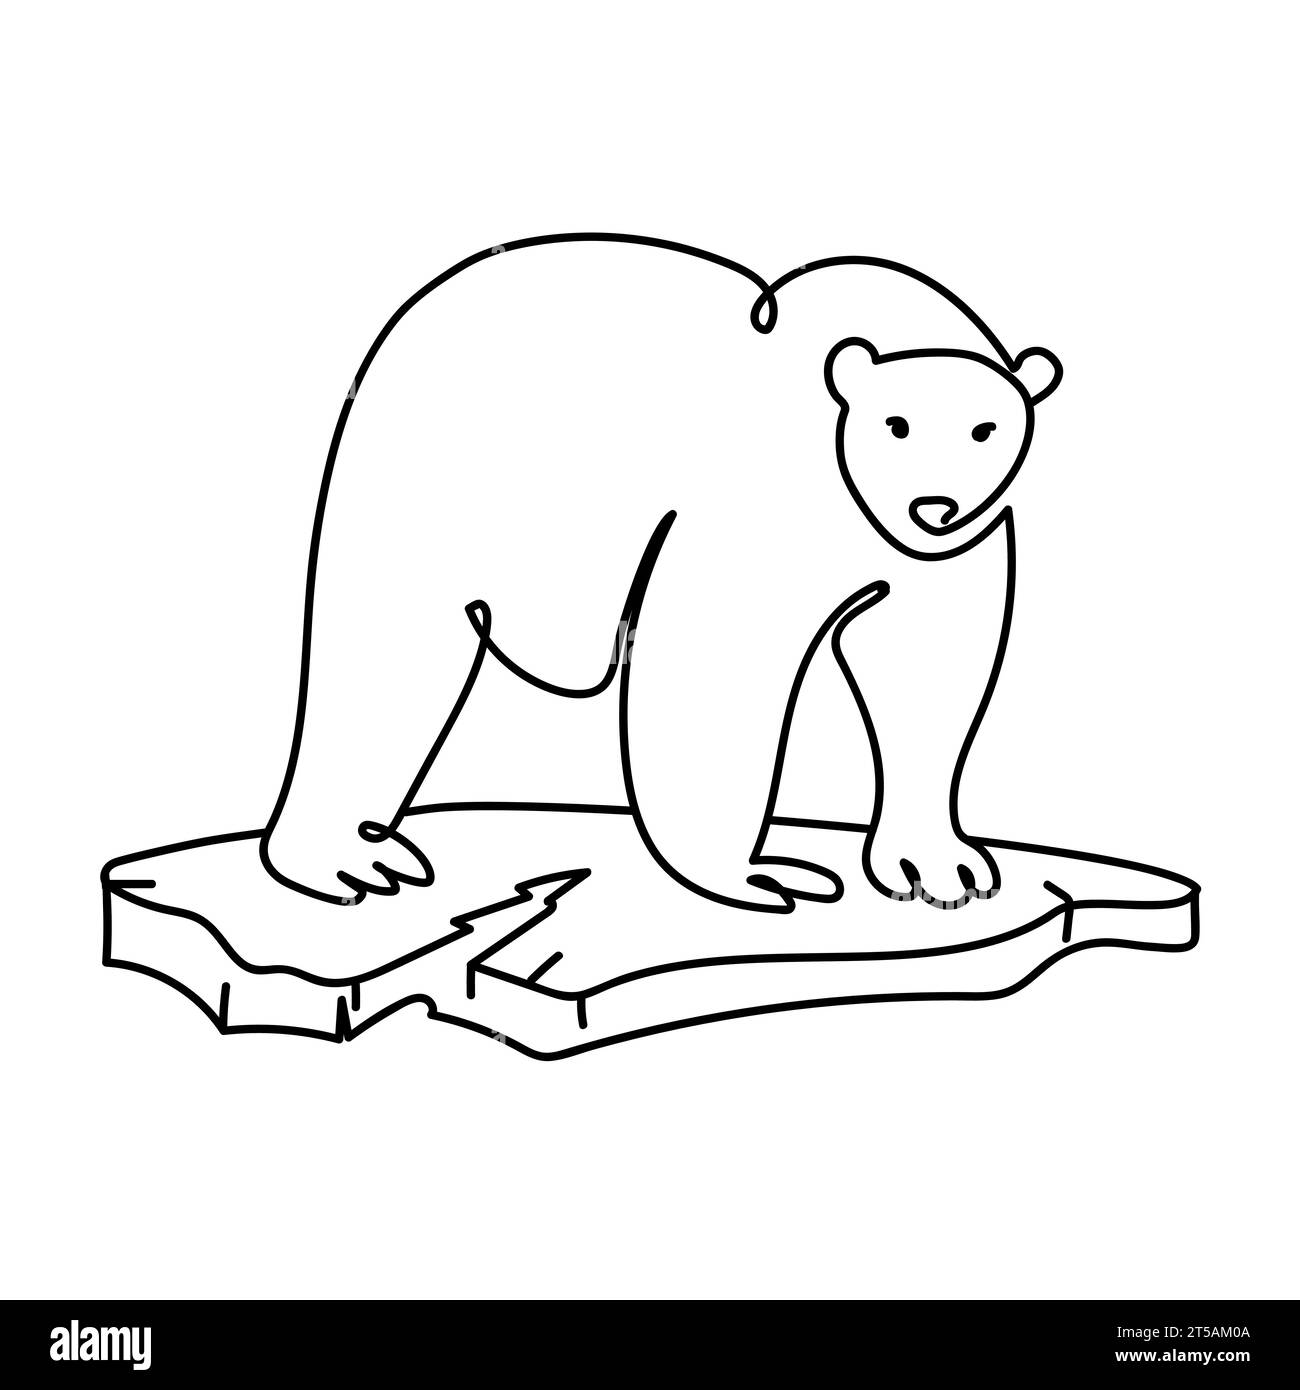 Polar Bär auf einer Eisscholle Linie Kunst Zeichnung.Global Warming Konzept.Polar Bär einfaches Emblem Icon Logo Design.Vektor schwarz-weiß Illustration Stock Vektor